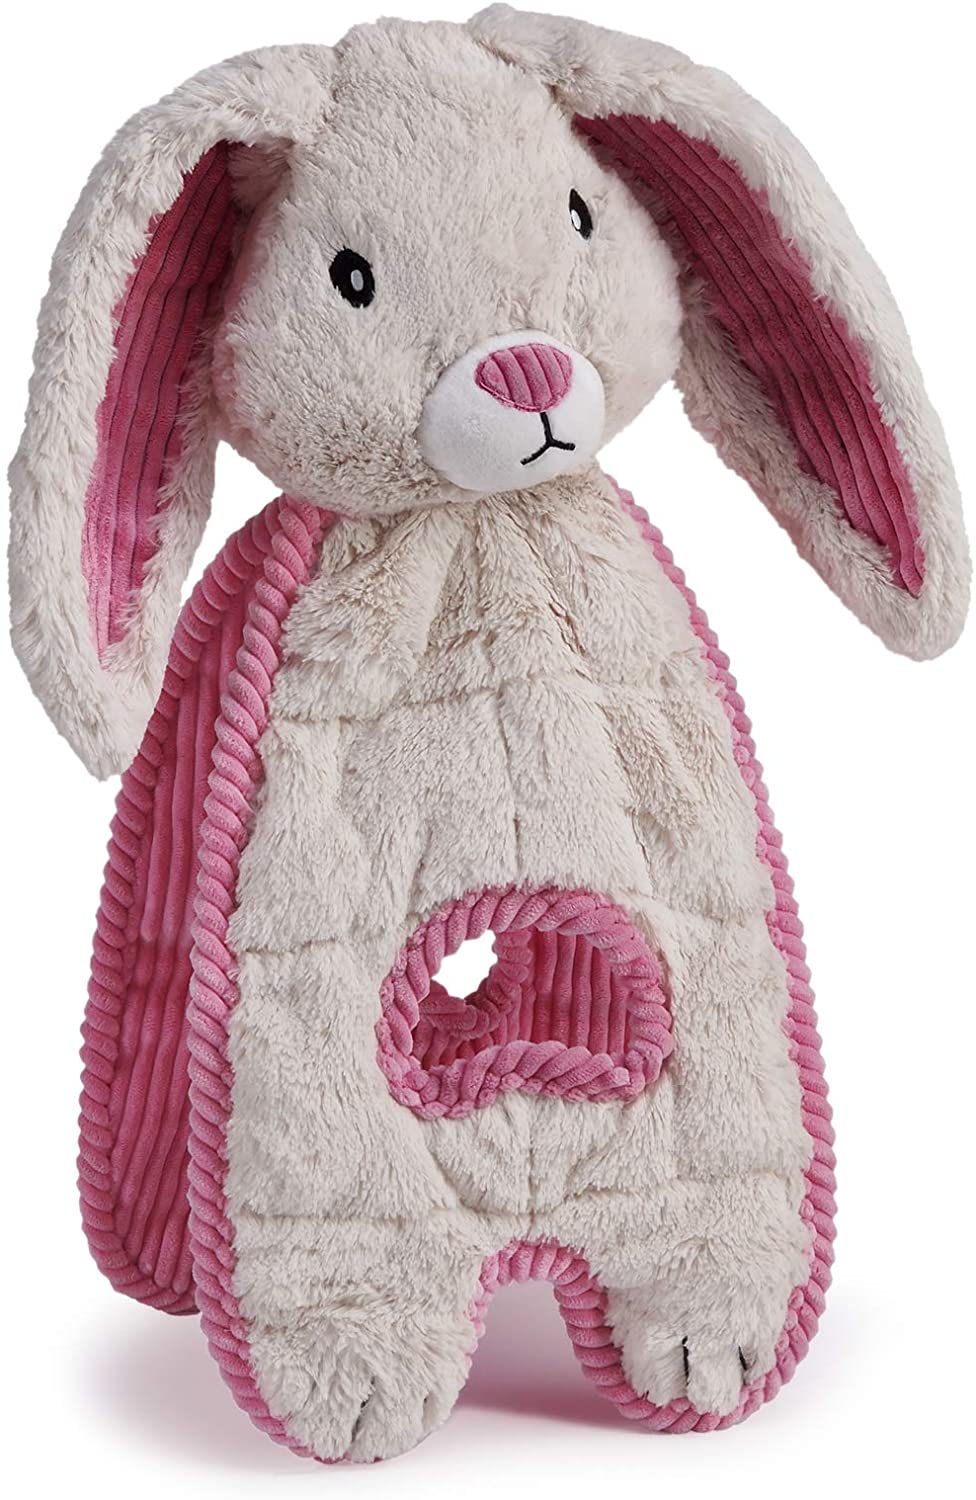 Cuddle Tugs- Blushing Bunny Tug Toy